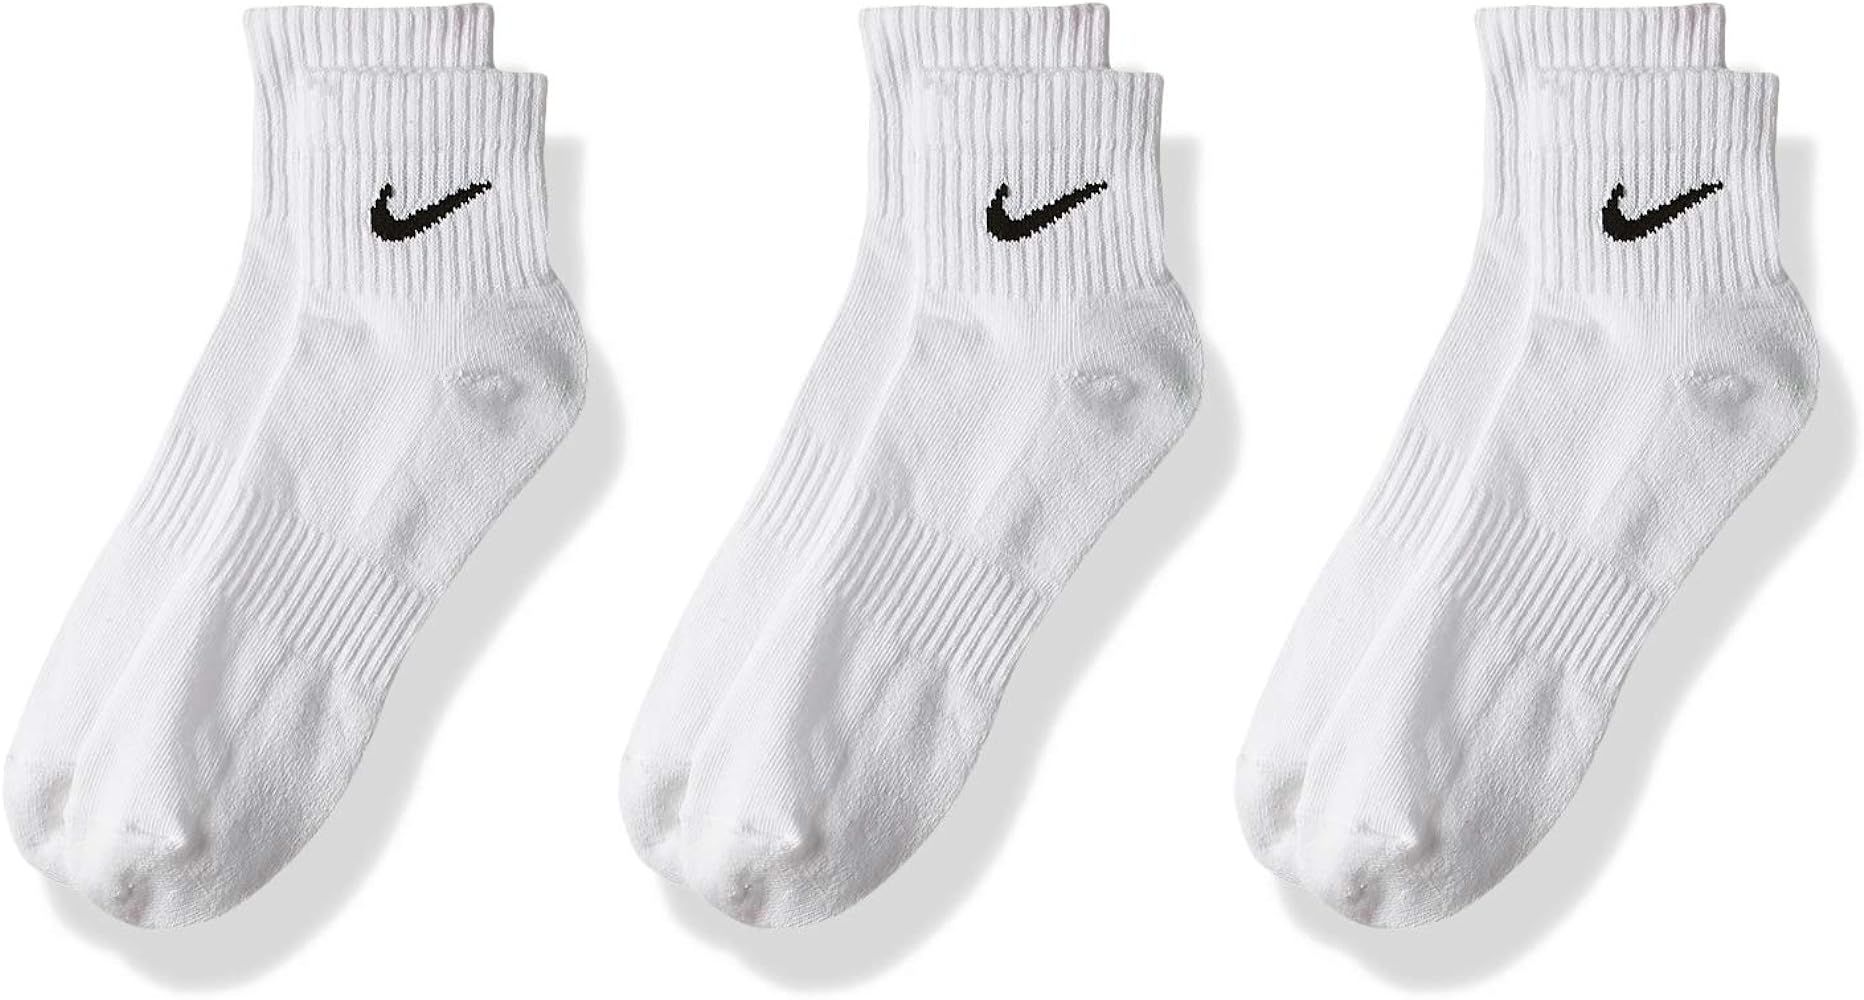 Nike Everyday Cushion Ankle Training Socks (3 Pair) | Amazon (US)